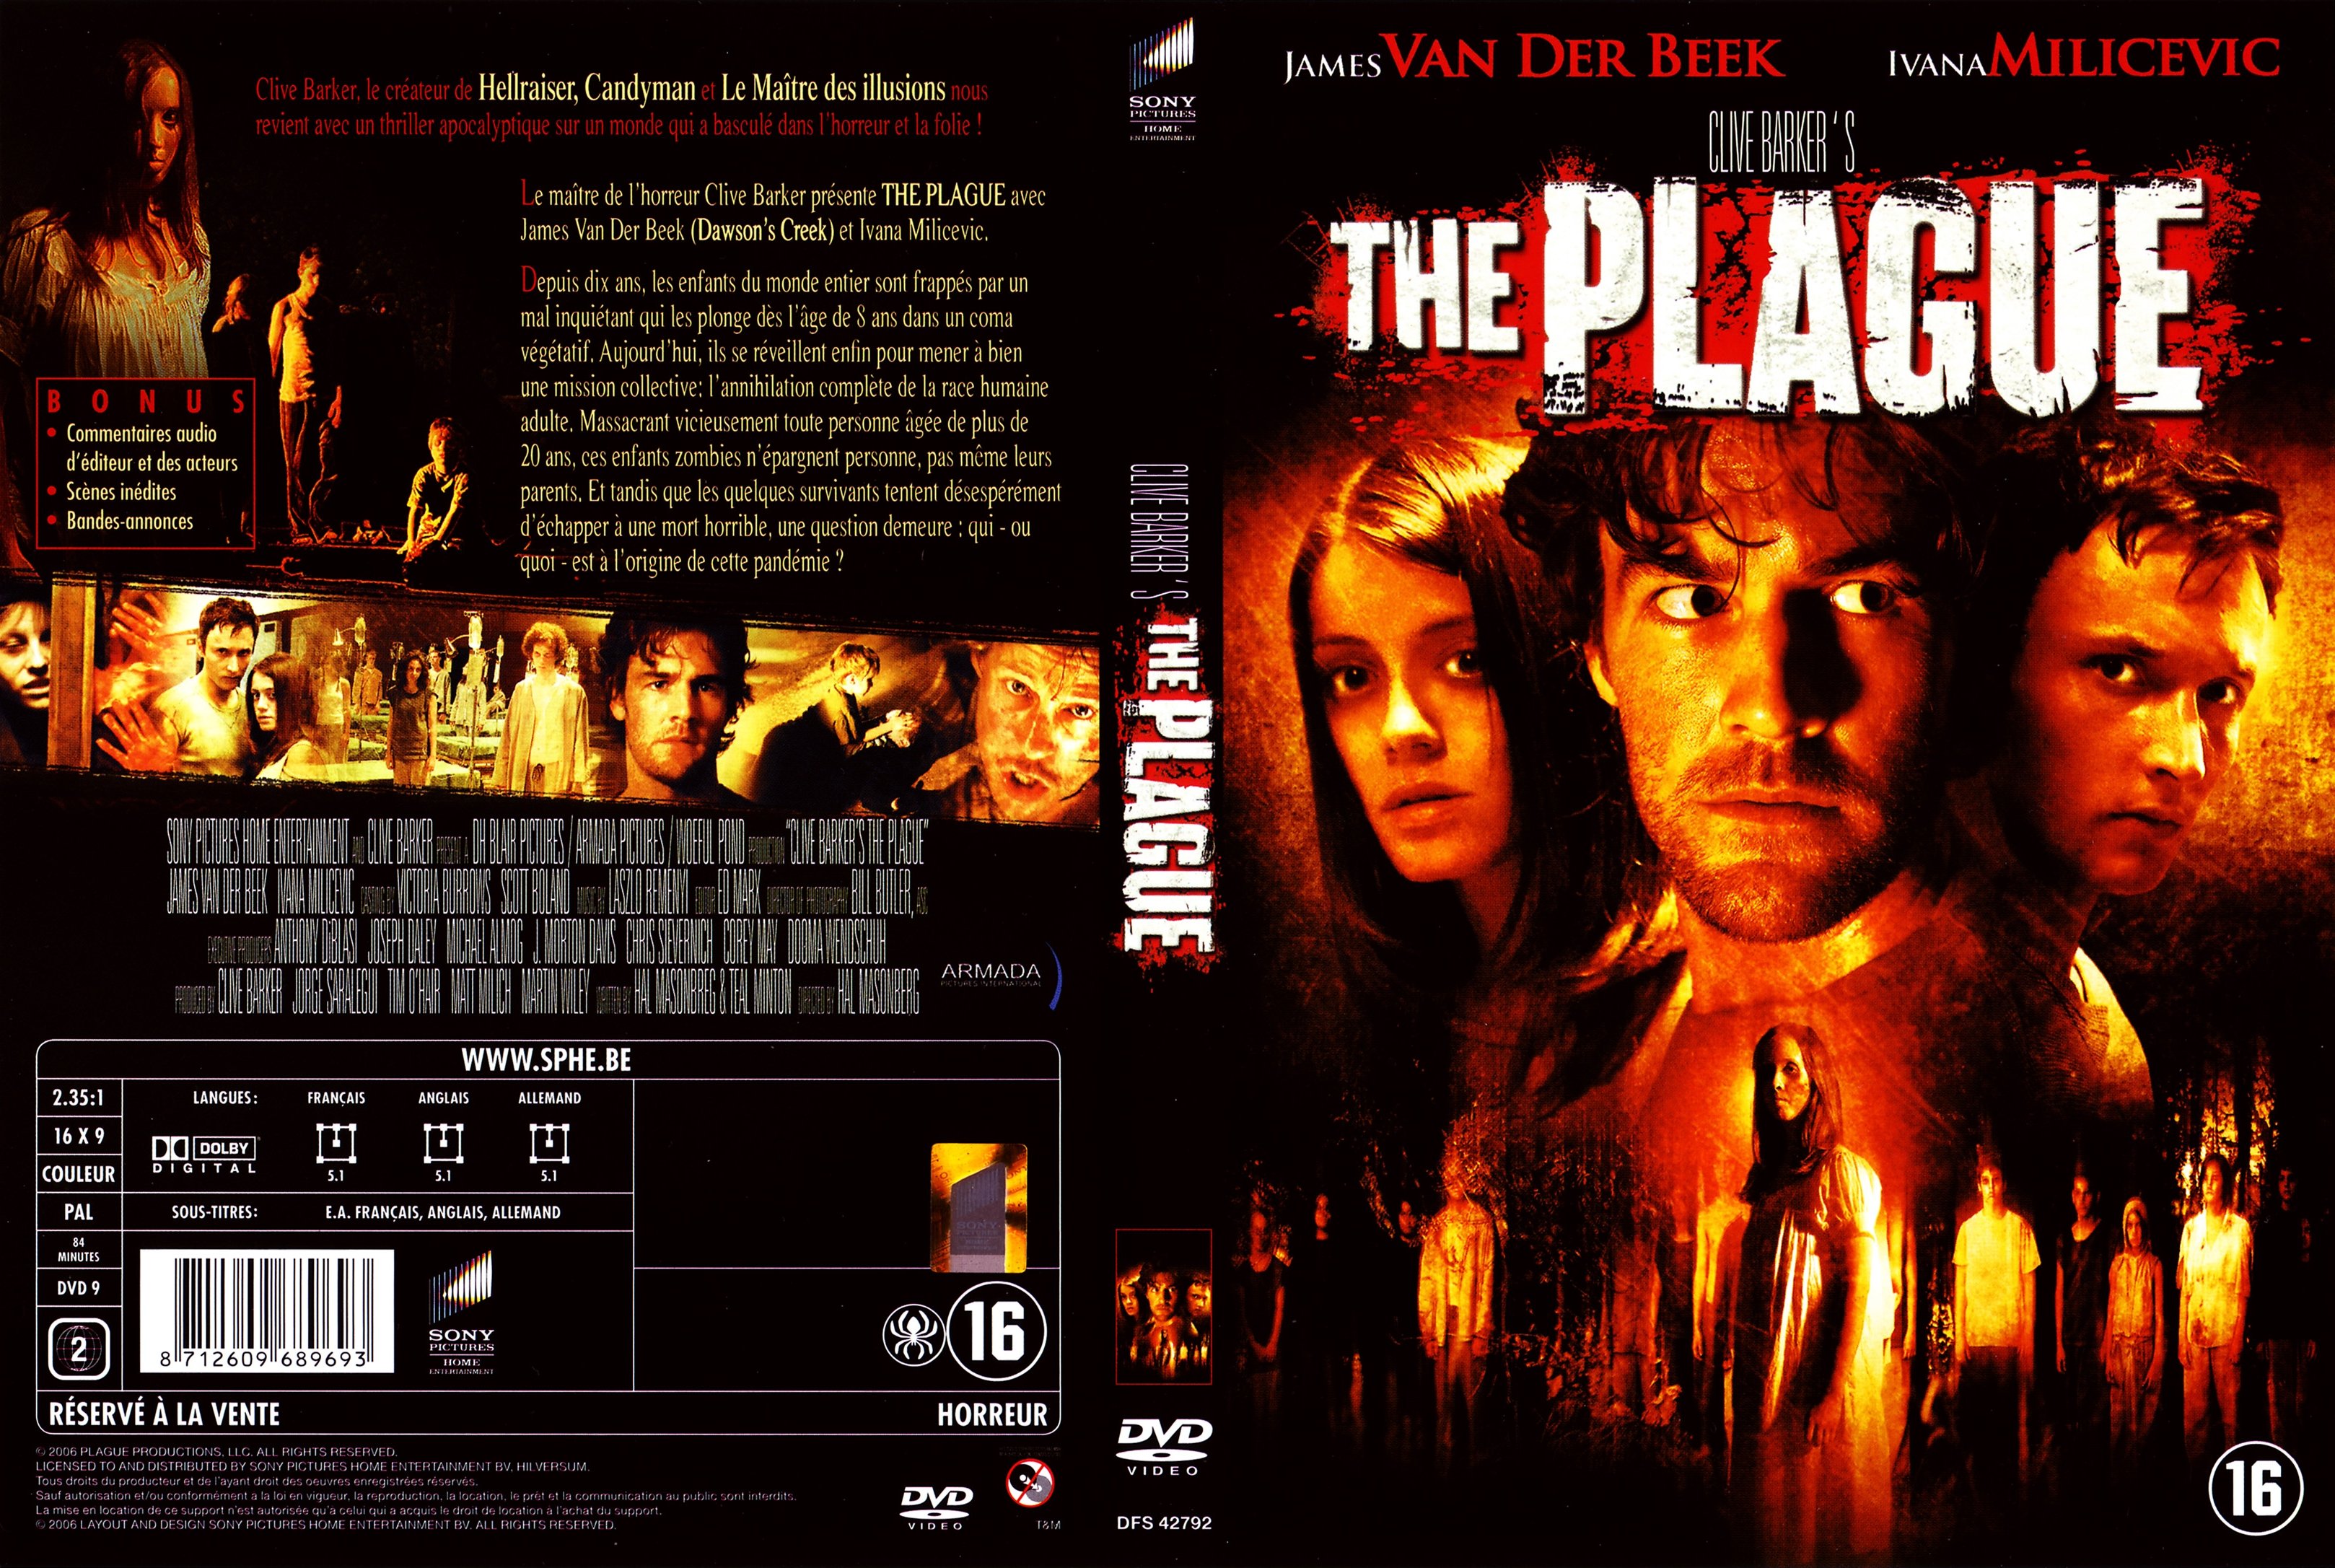 Jaquette DVD The plague